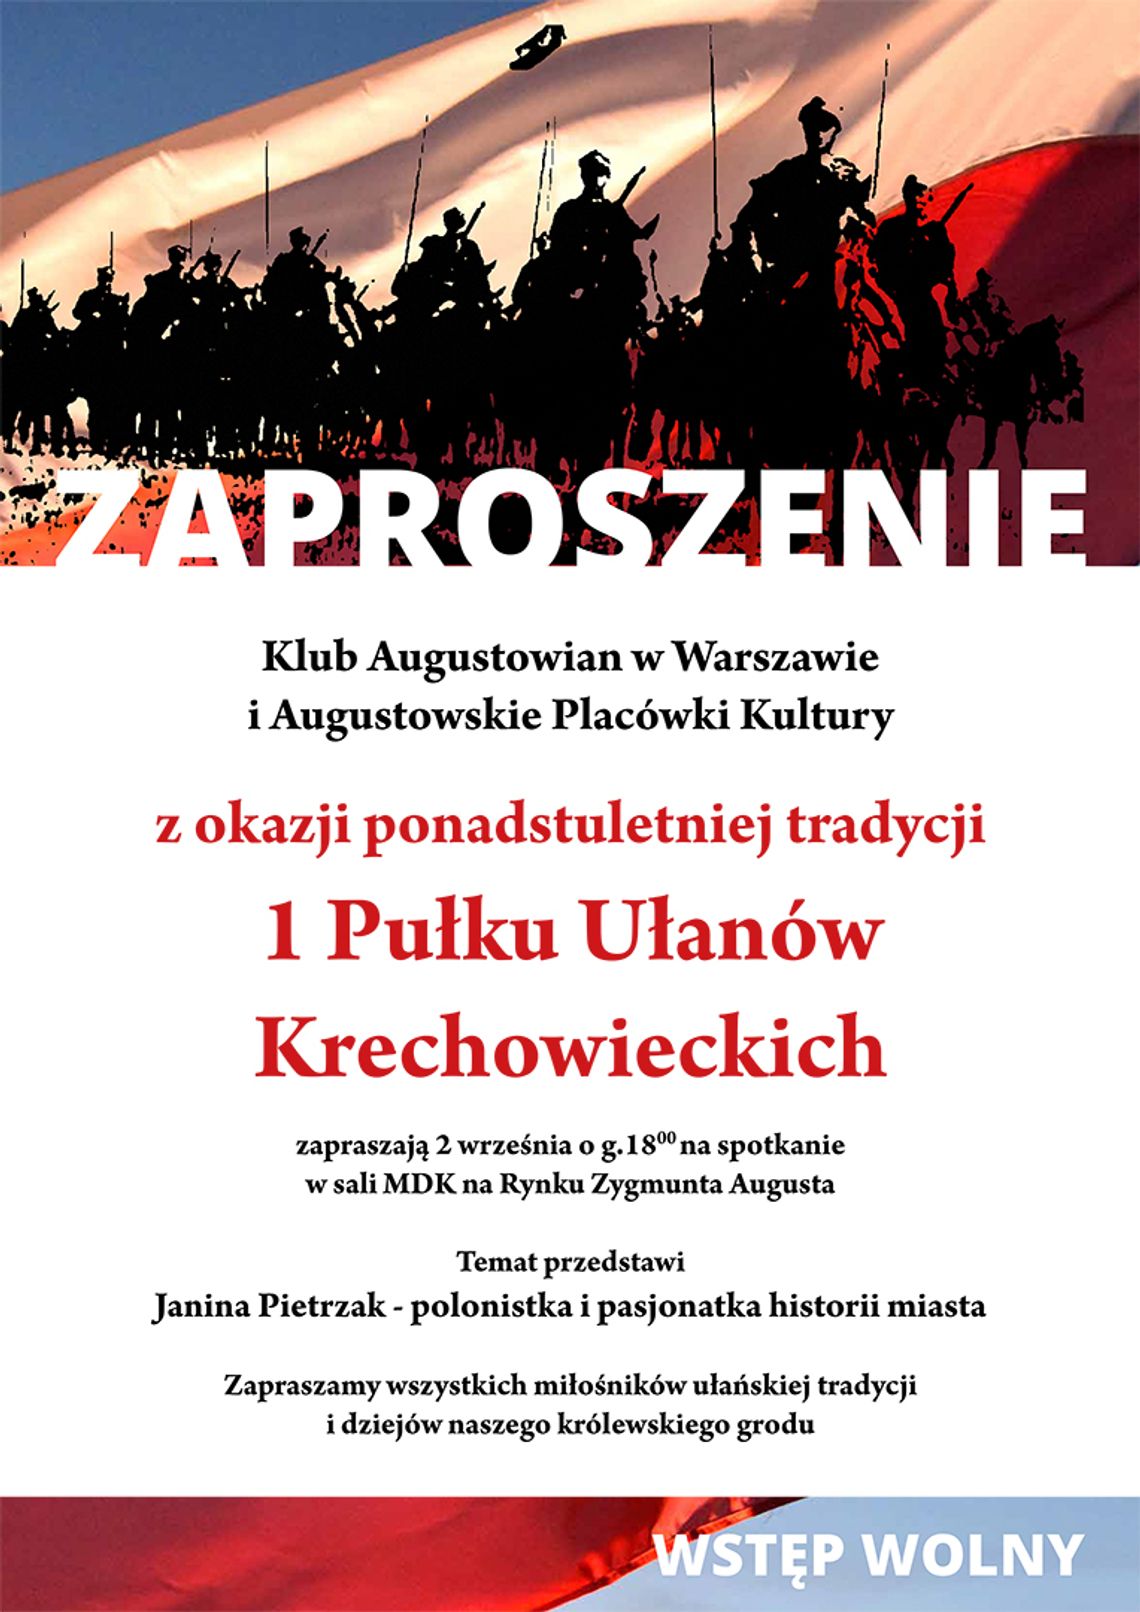 1 Pułk Ułanów Krechowieckich. Sto lat tradycji